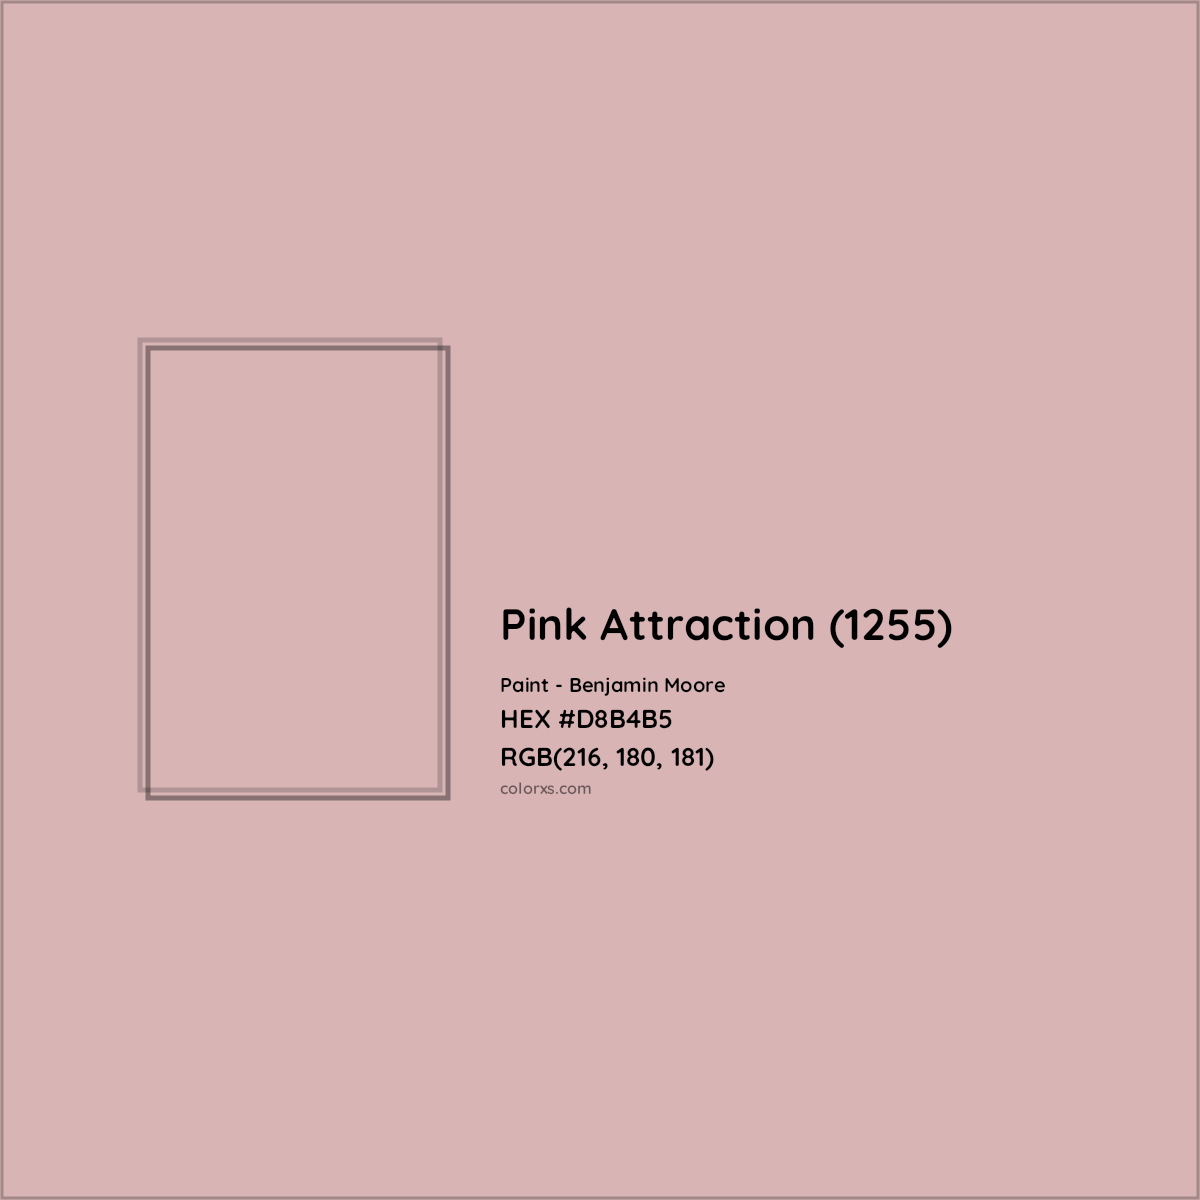 HEX #D8B4B5 Pink Attraction (1255) Paint Benjamin Moore - Color Code